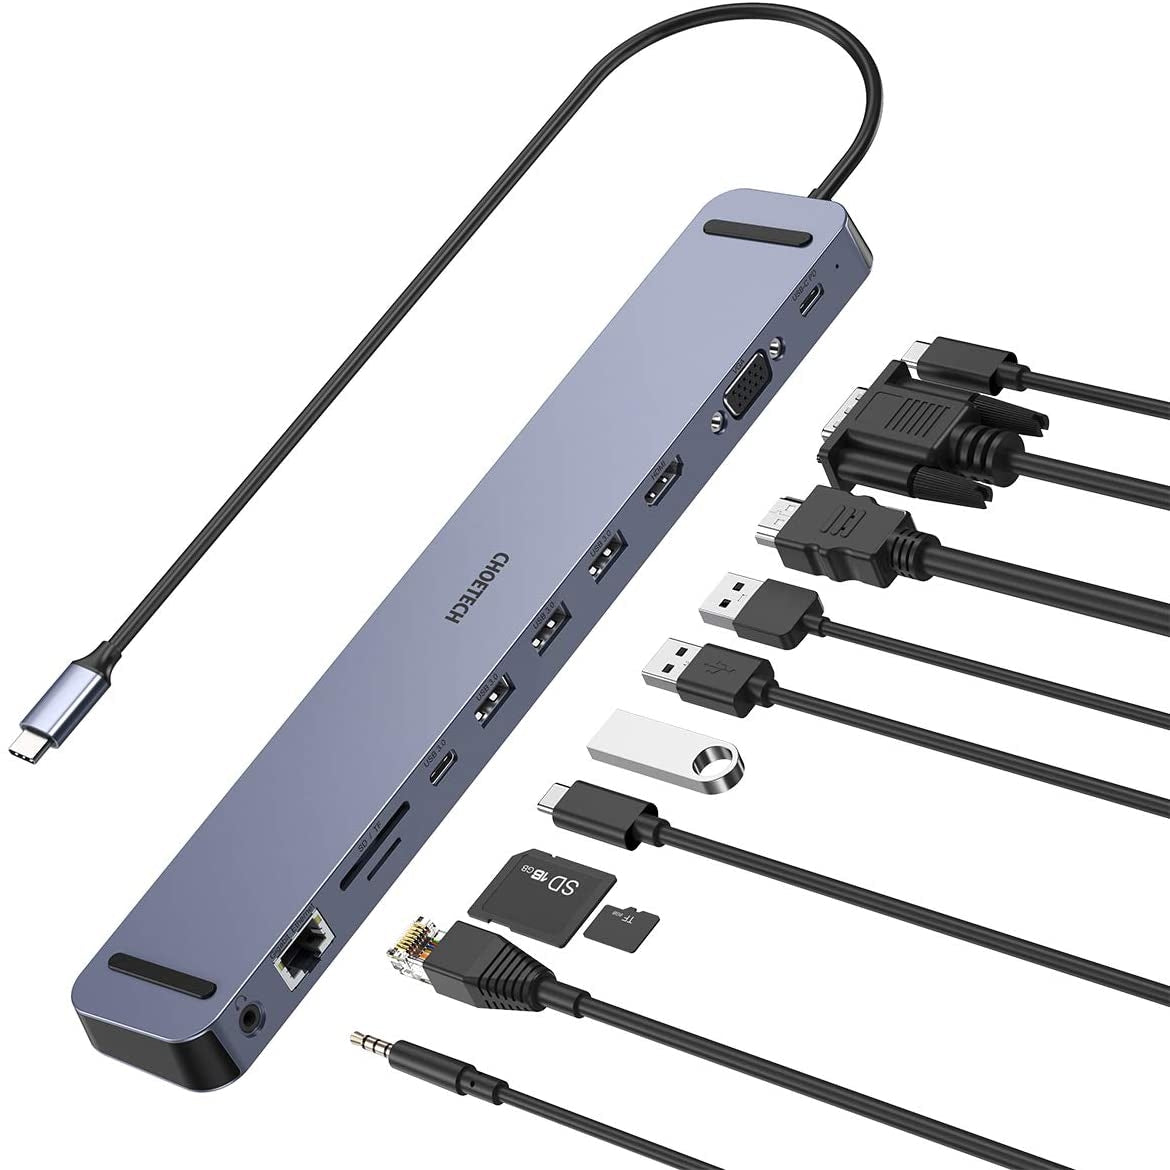 HUB-M20 USB-C 11-in-1 Multifunction Adapter